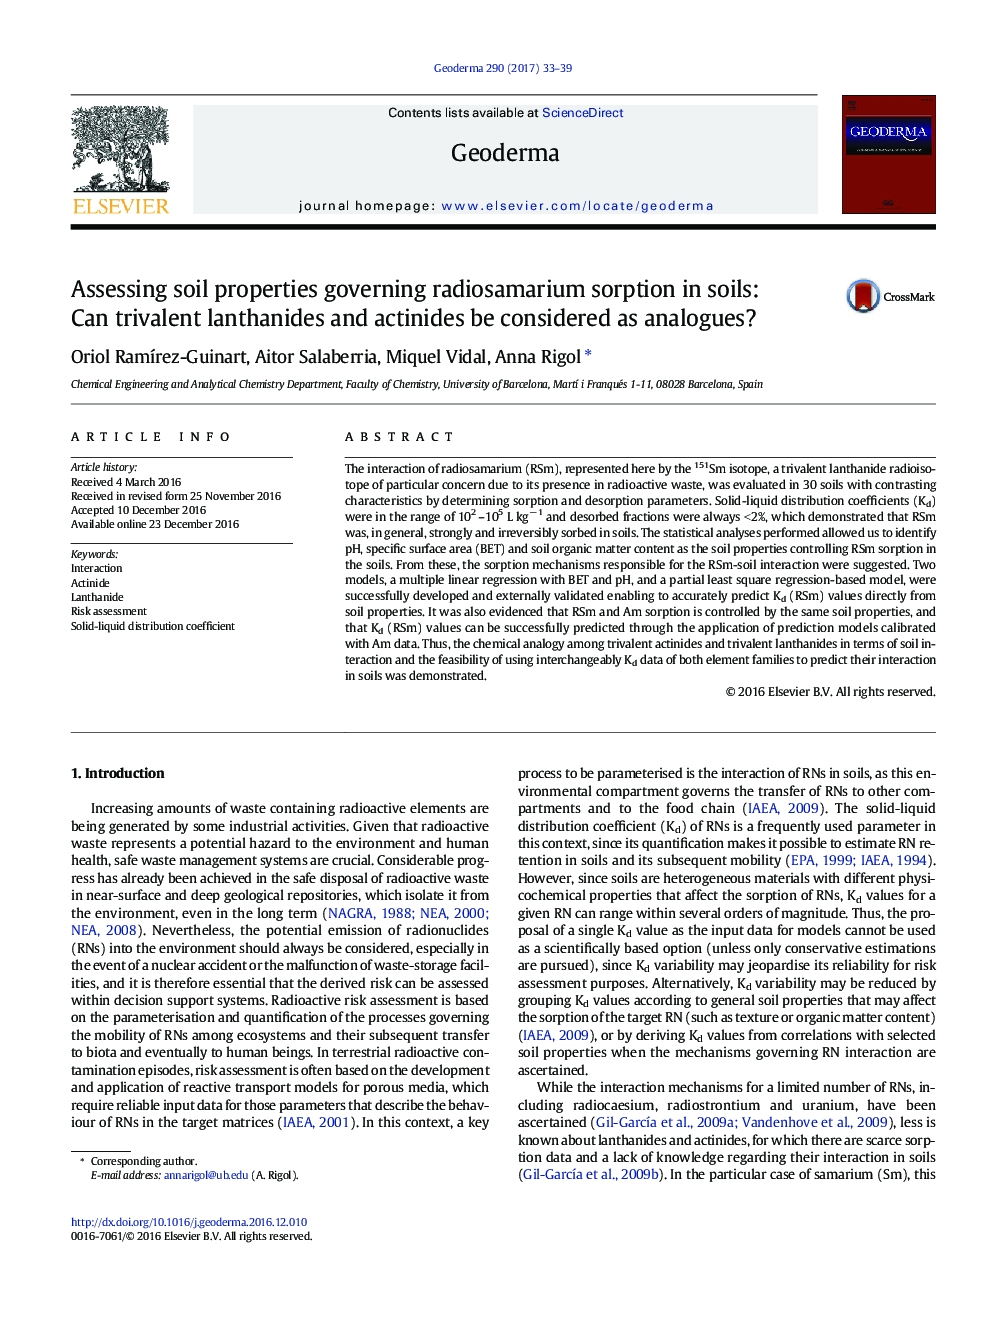 ارزیابی ویژگیهای خاک در جذب رادیوساماریوم در خاک: آیا لانتانیدها و اکتینید های سه گانه به عنوان آنالوگ مورد توجه قرار می گیرند؟ 